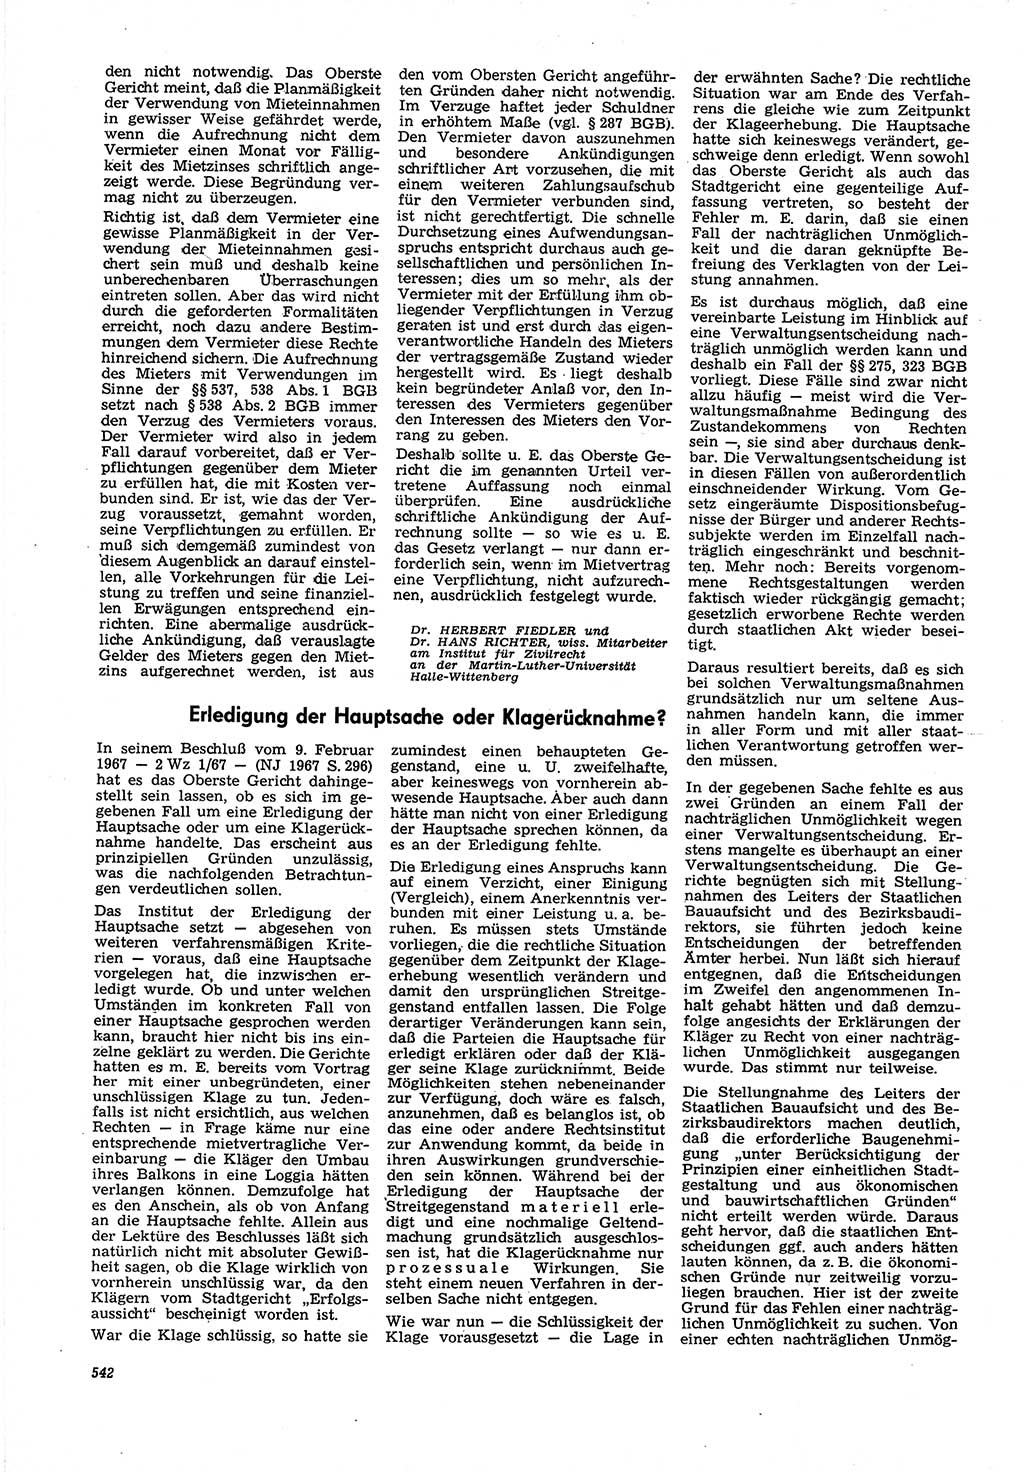 Neue Justiz (NJ), Zeitschrift für Recht und Rechtswissenschaft [Deutsche Demokratische Republik (DDR)], 21. Jahrgang 1967, Seite 542 (NJ DDR 1967, S. 542)